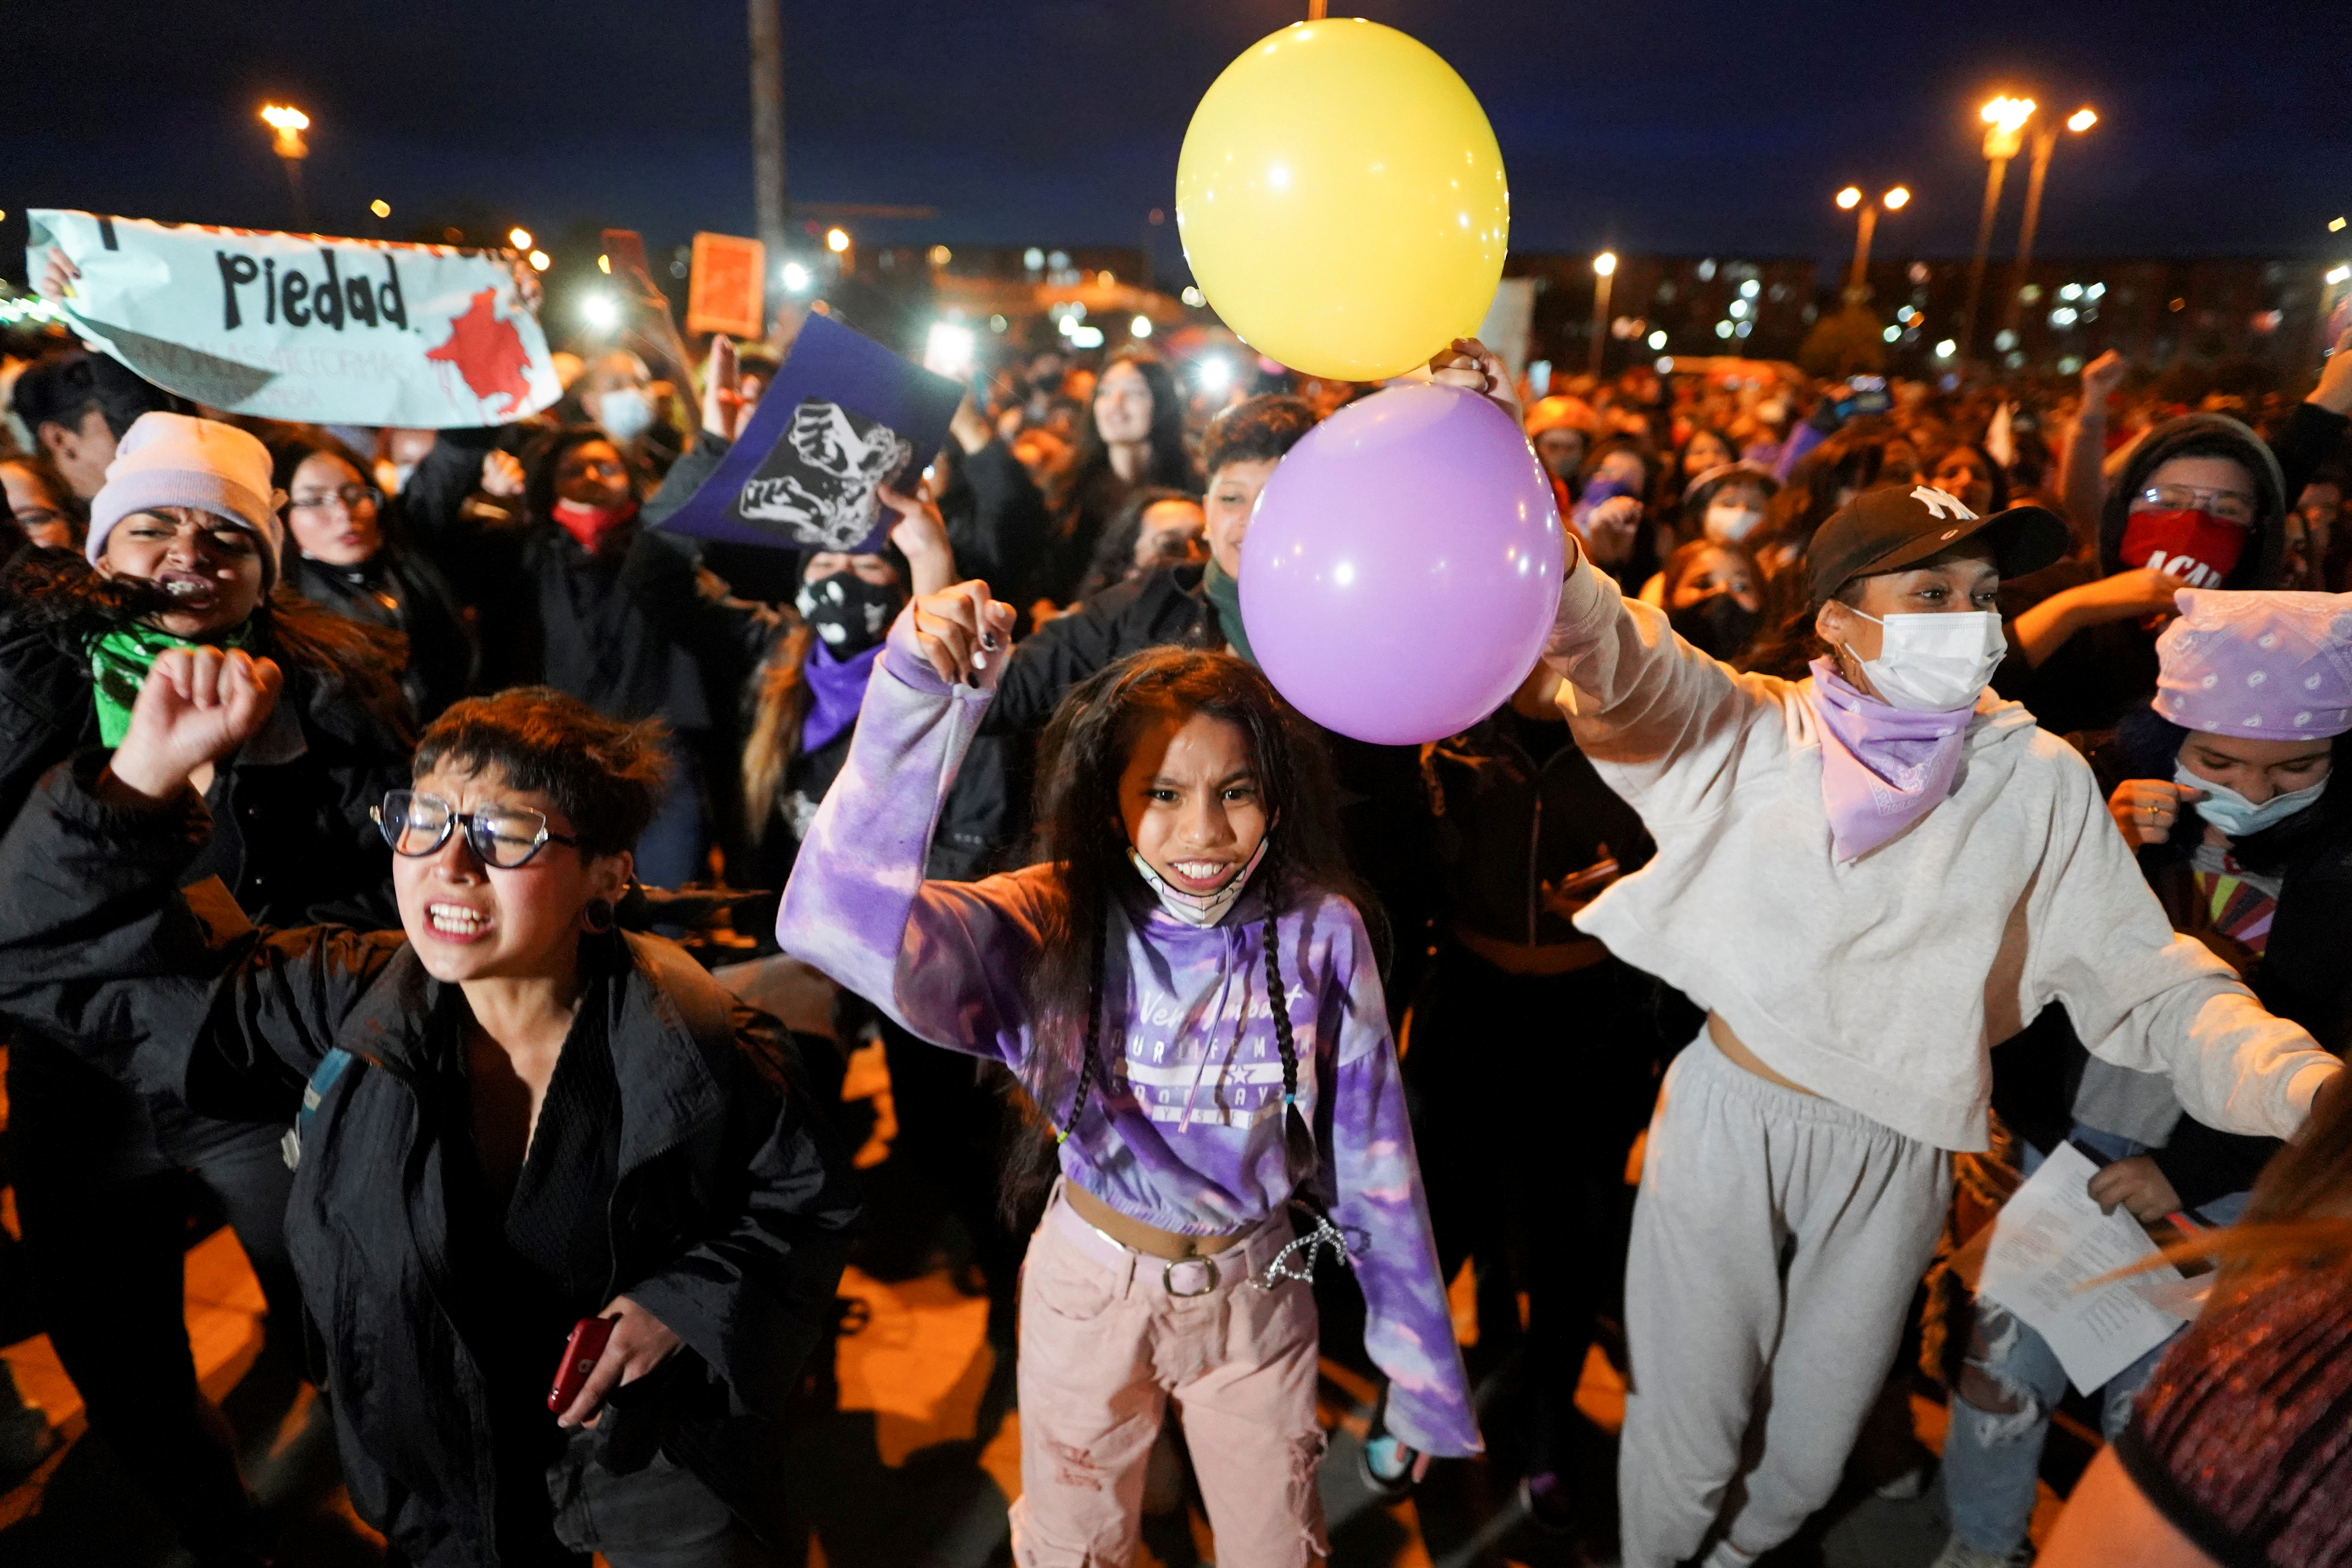 Mujeres participan en una protesta contra la agresión sexual por parte de la policía y el exceso de fuerza pública contra las protestas pacíficas, en Bogotá, Colombia, el 14 de mayo de 2021. (REUTERS/Nathalia Angarita)